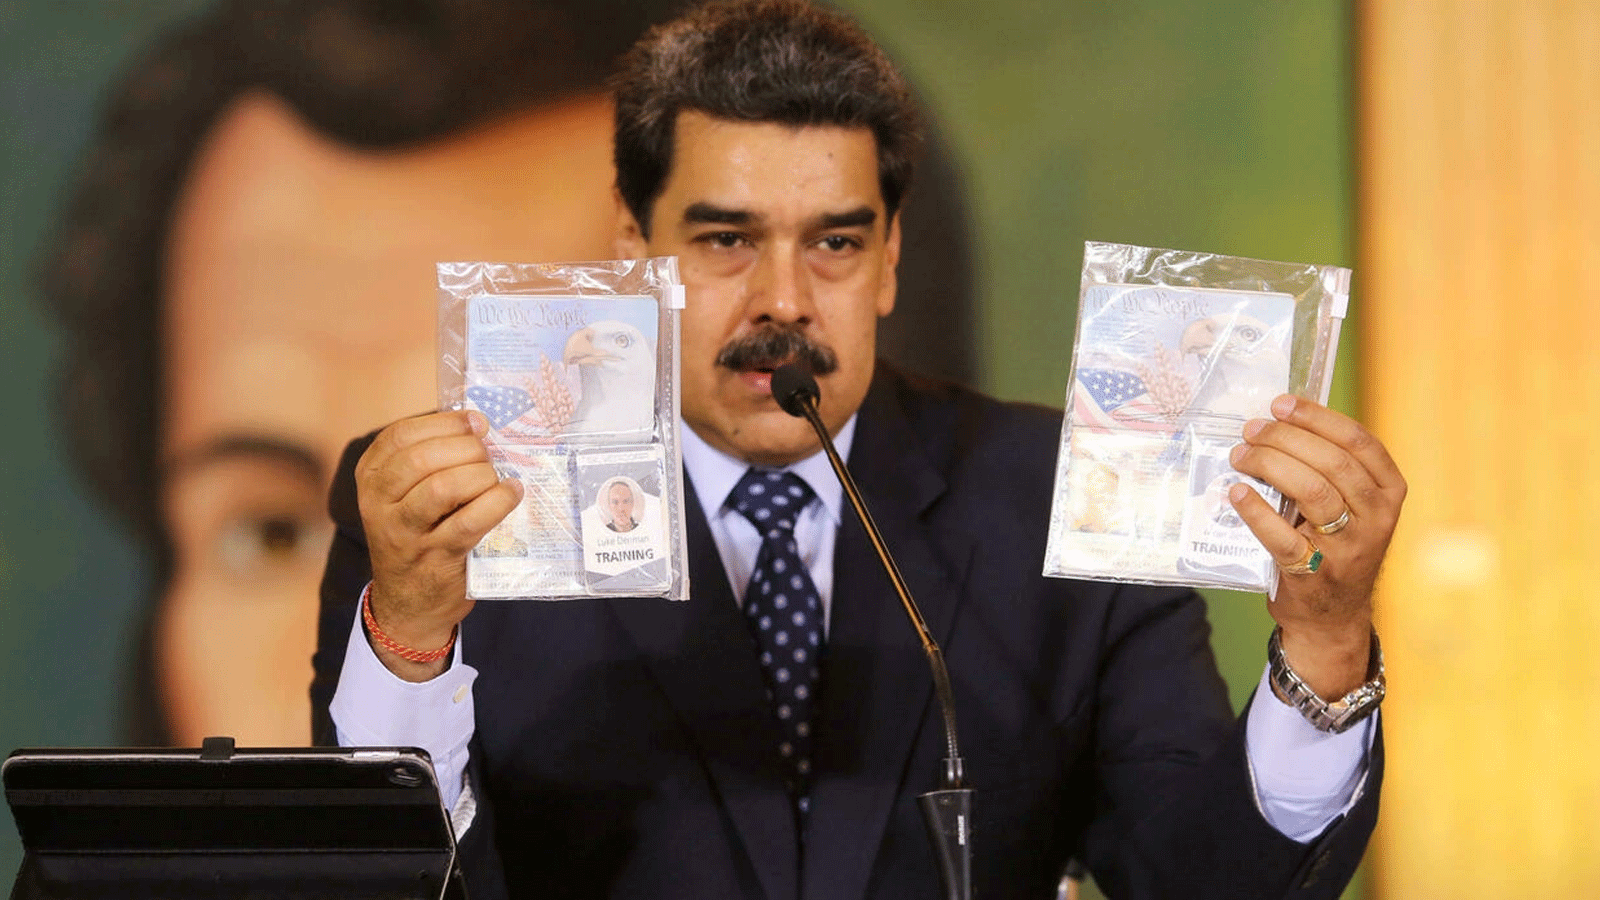 نيكولاس مادورو يُمسك جوازي سفر مواطنين أمريكيين اعتقلتهما قوات الأمن، خلال مؤتمر بالفيديو مع وسائل إعلام دولية، في قصر ميرافلوريس الرئاسي في كاراكاس. 6 أيار\مايو 2020.